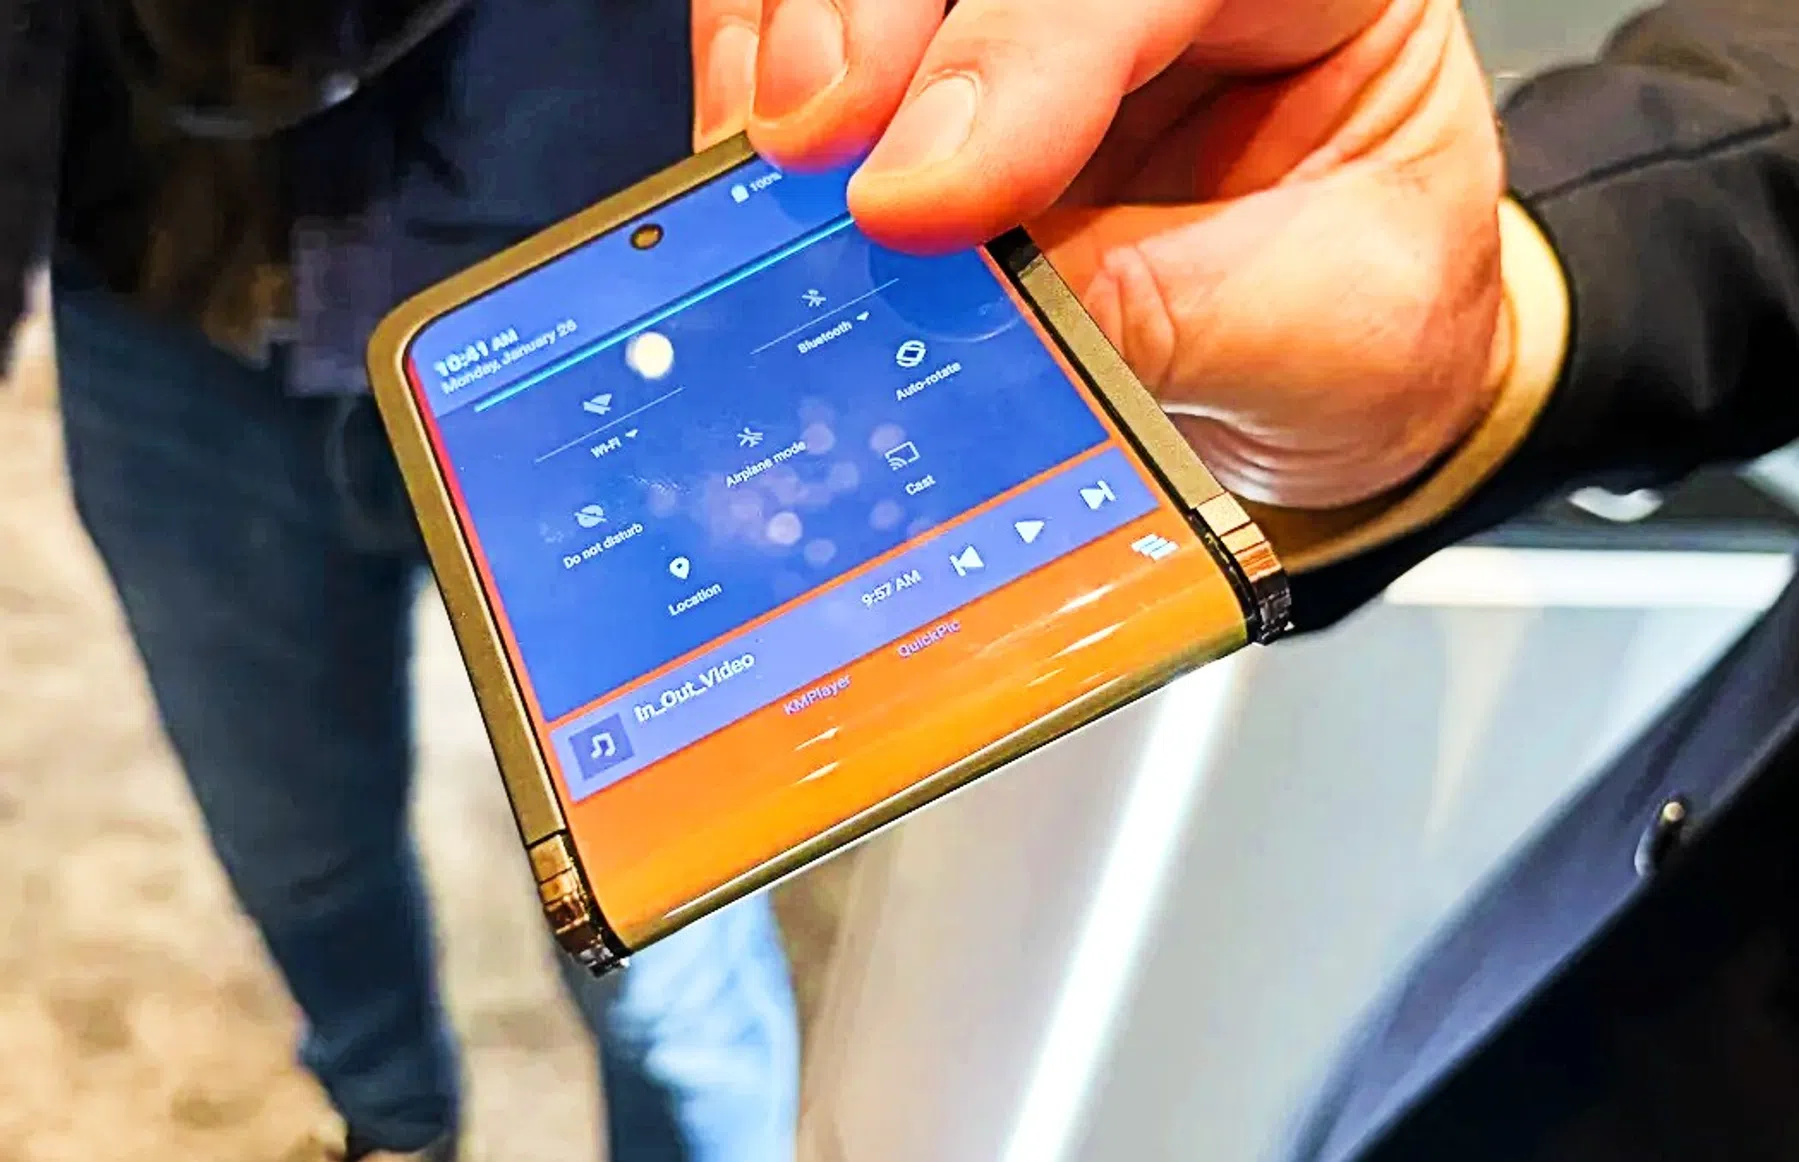 Dit is volgens Samsung de smartphone van de toekomst: 'Te mooi om waar te zijn'